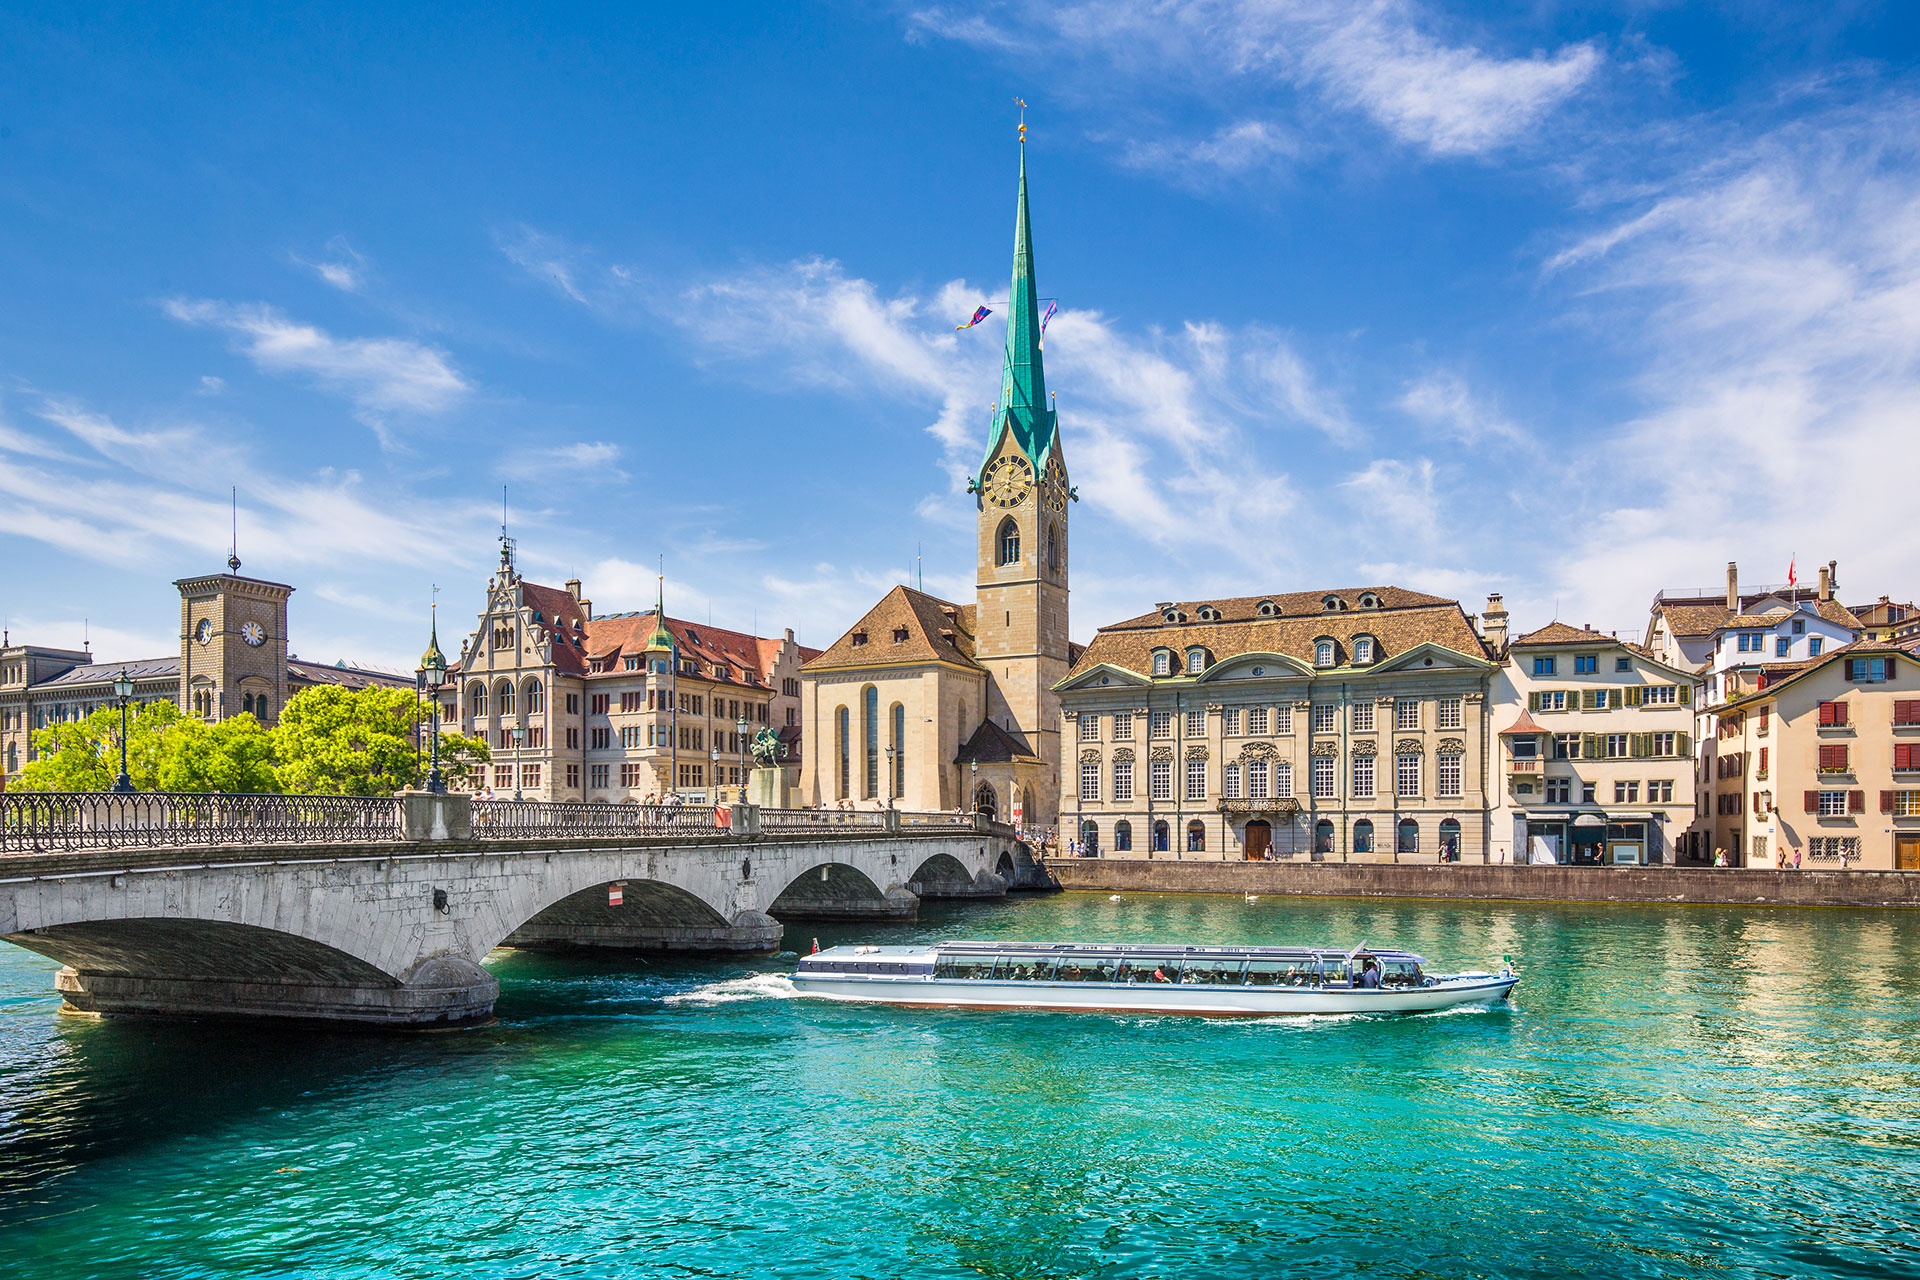 Zurich - the largest & prettiest city of Switzerland |Switzerland Tour